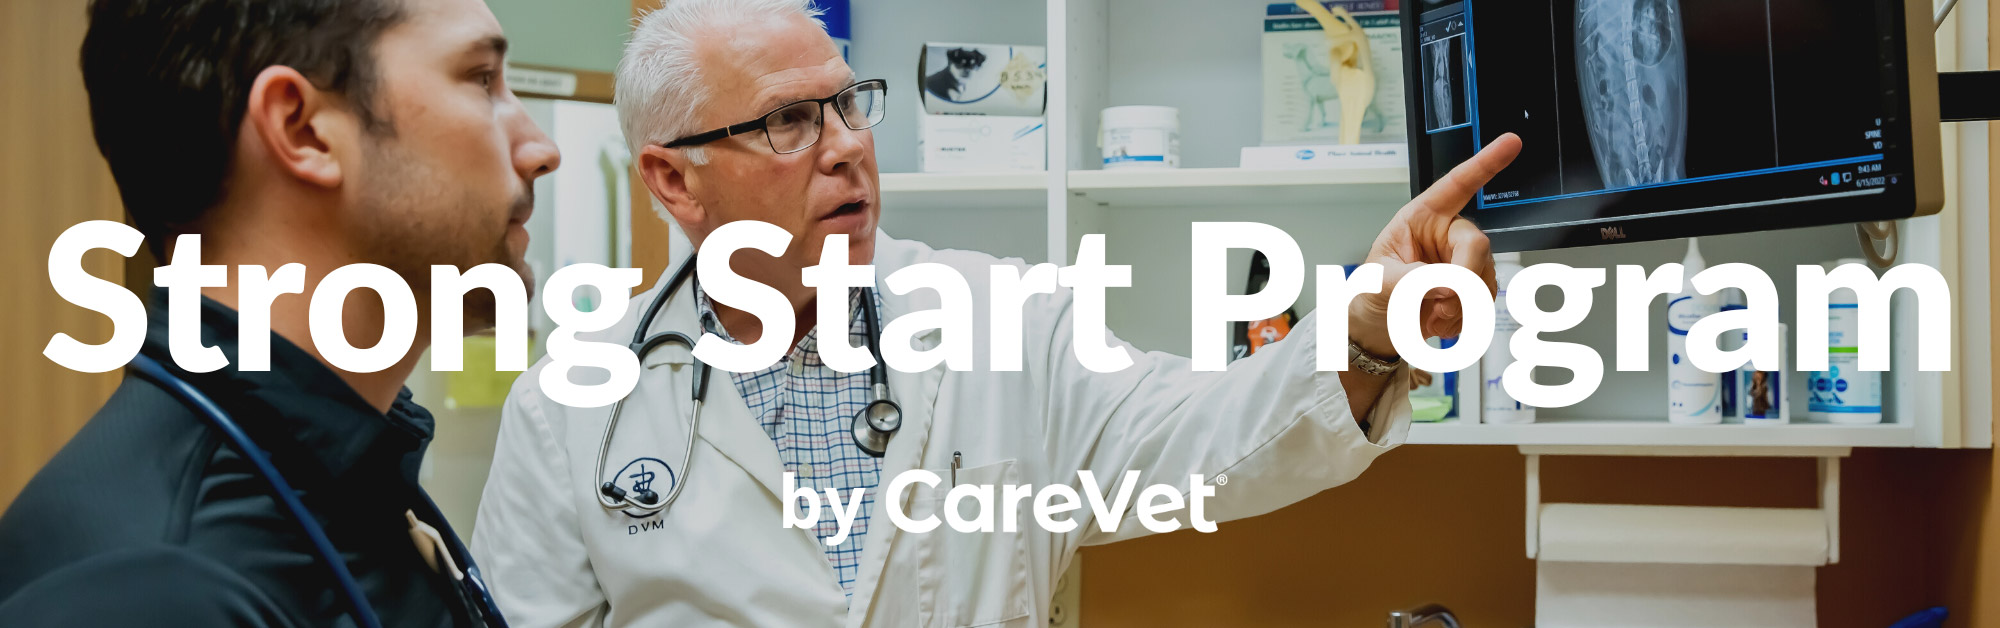 Strong Start Program by CareVet